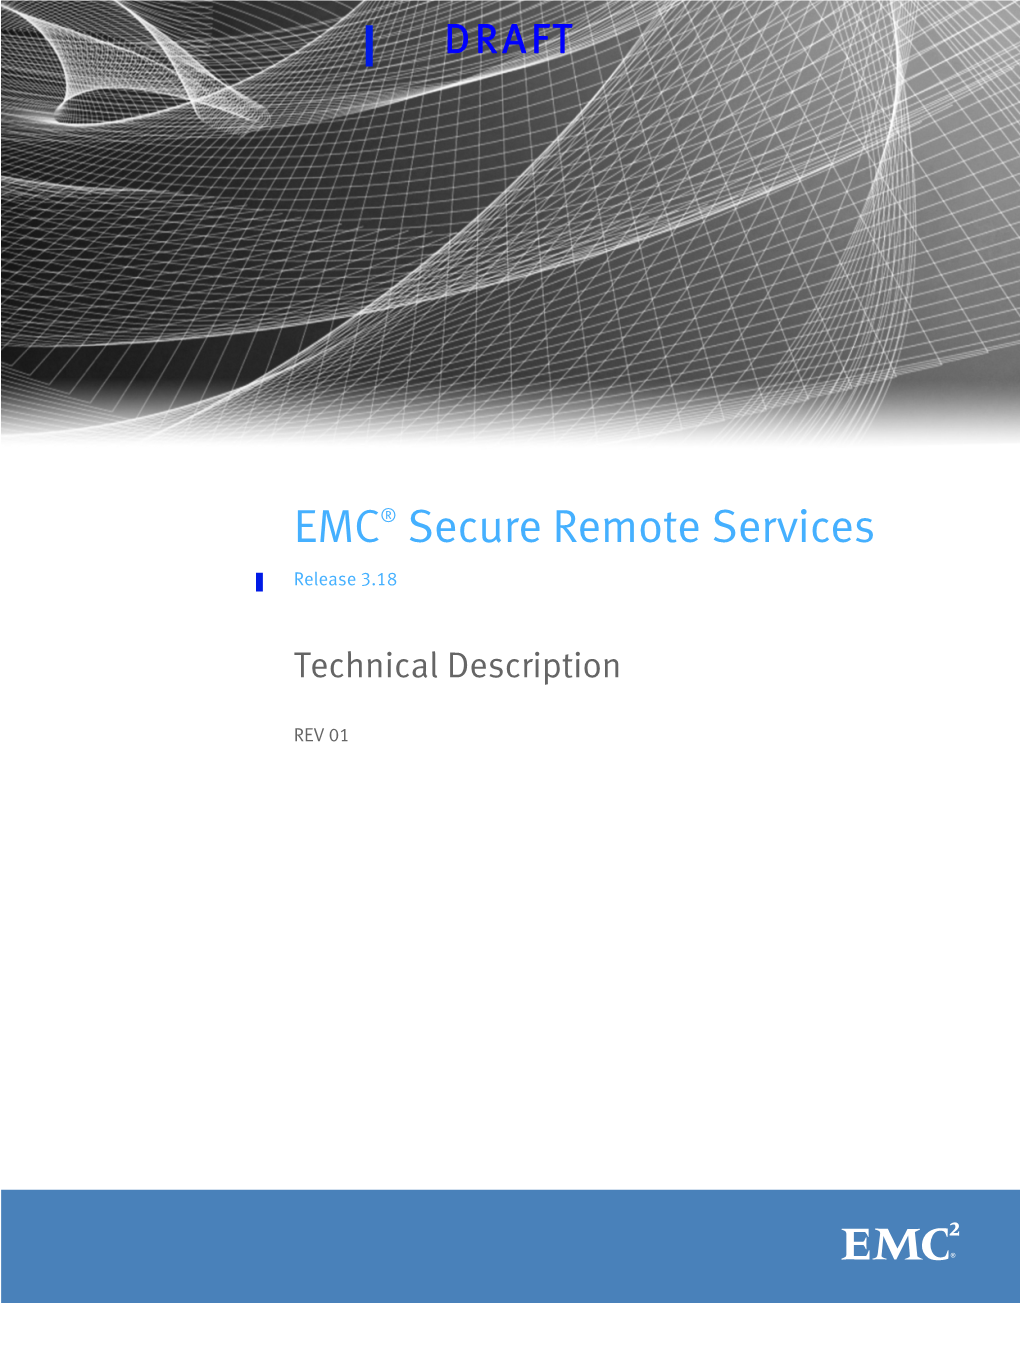 EMC Secure Remote Services 3.18 Technical Description